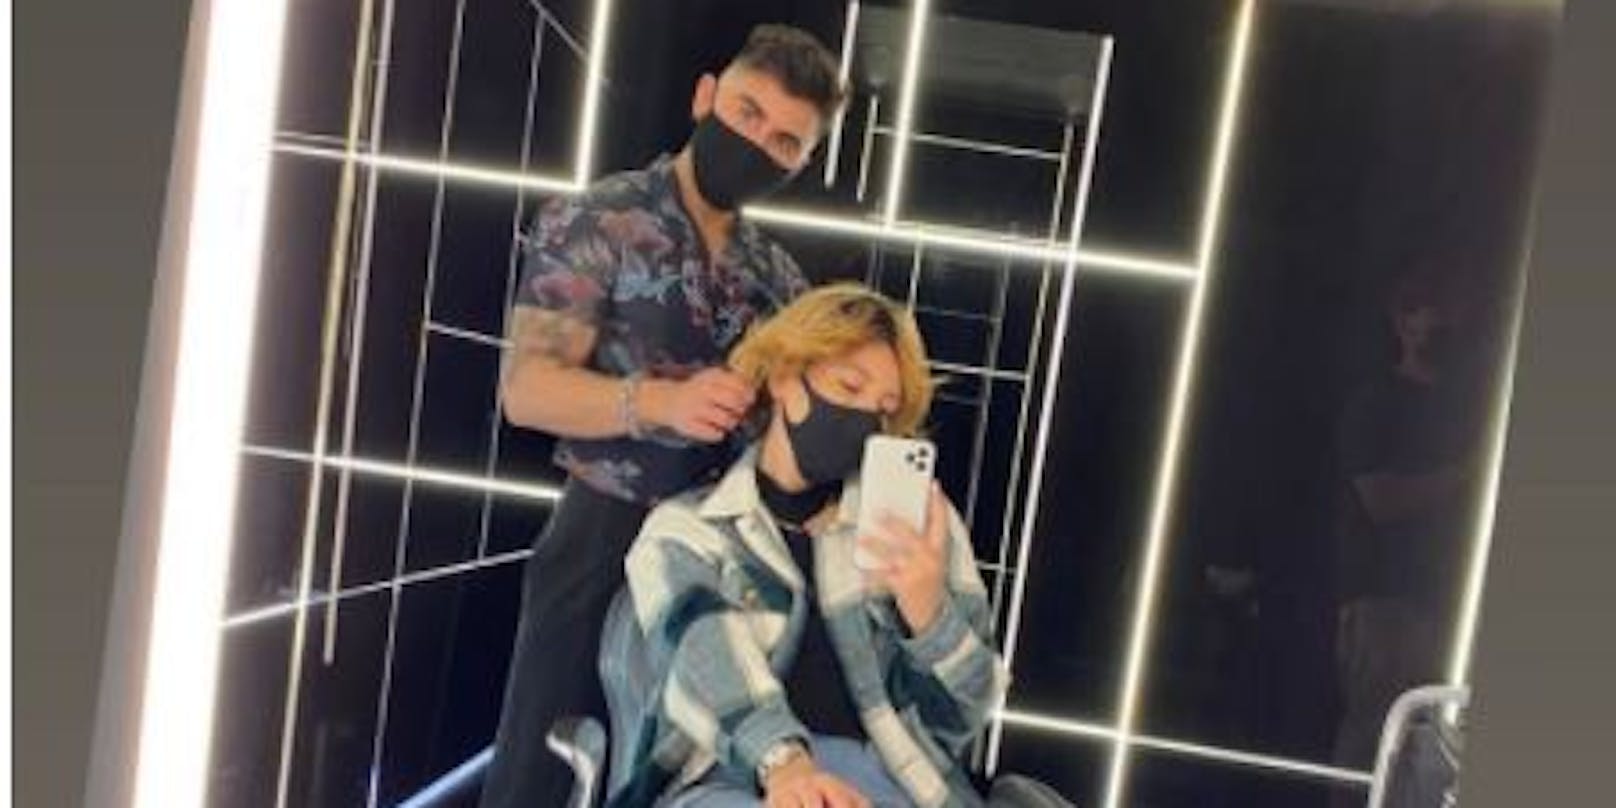 Ihren Friseurbesuch hält <strong>Dagi Bee</strong> für Instagram fest. Was ihre Millionen Follower wohl zu ihrer neuen Frisur sagen werden?